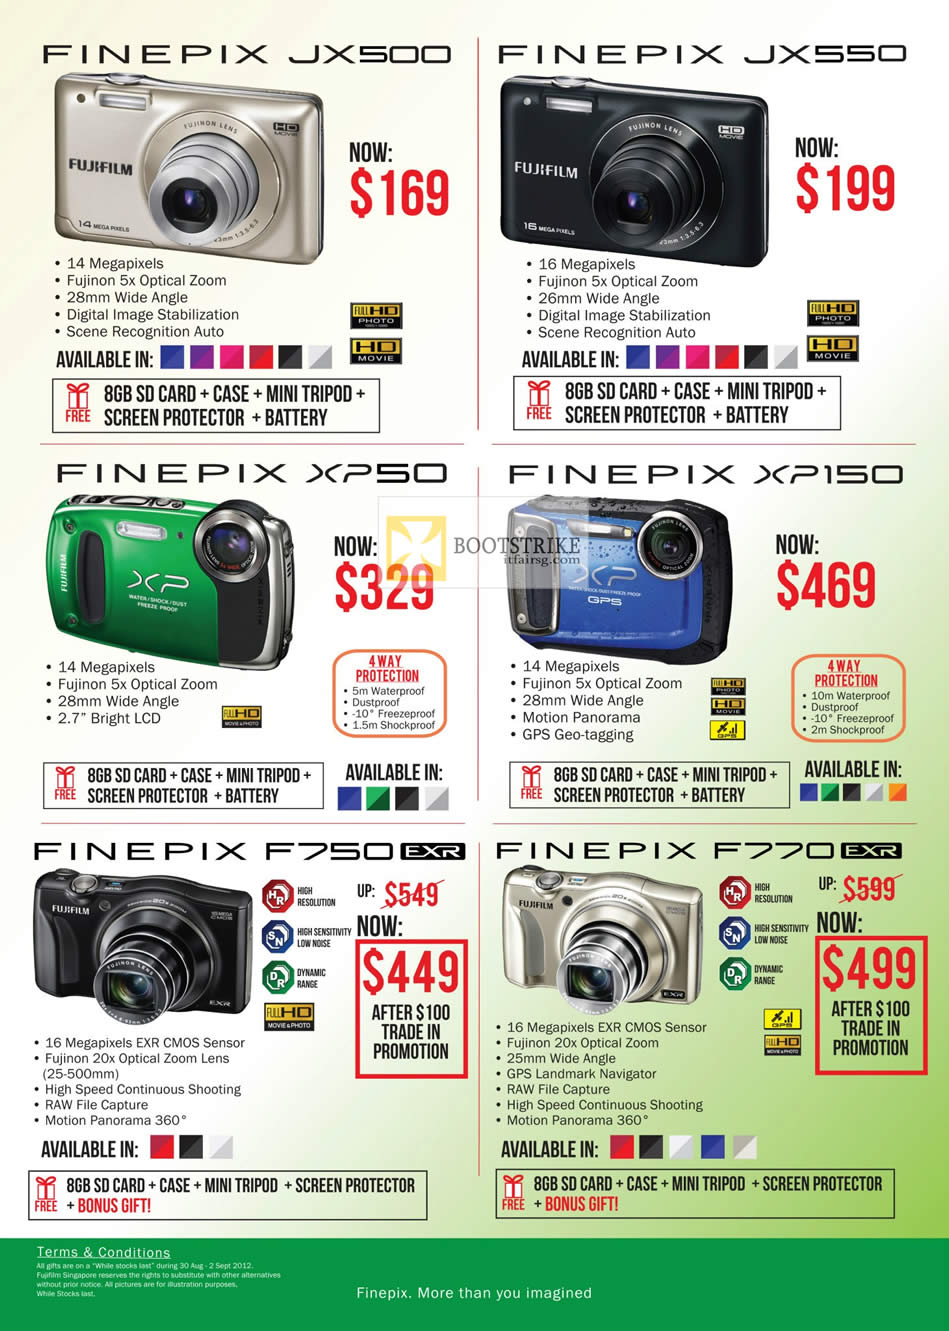 COMEX 2012 price list image brochure of Fujifilm Digital Cameras Finepix JX500, JX550, XP150, XP50, F750, F770